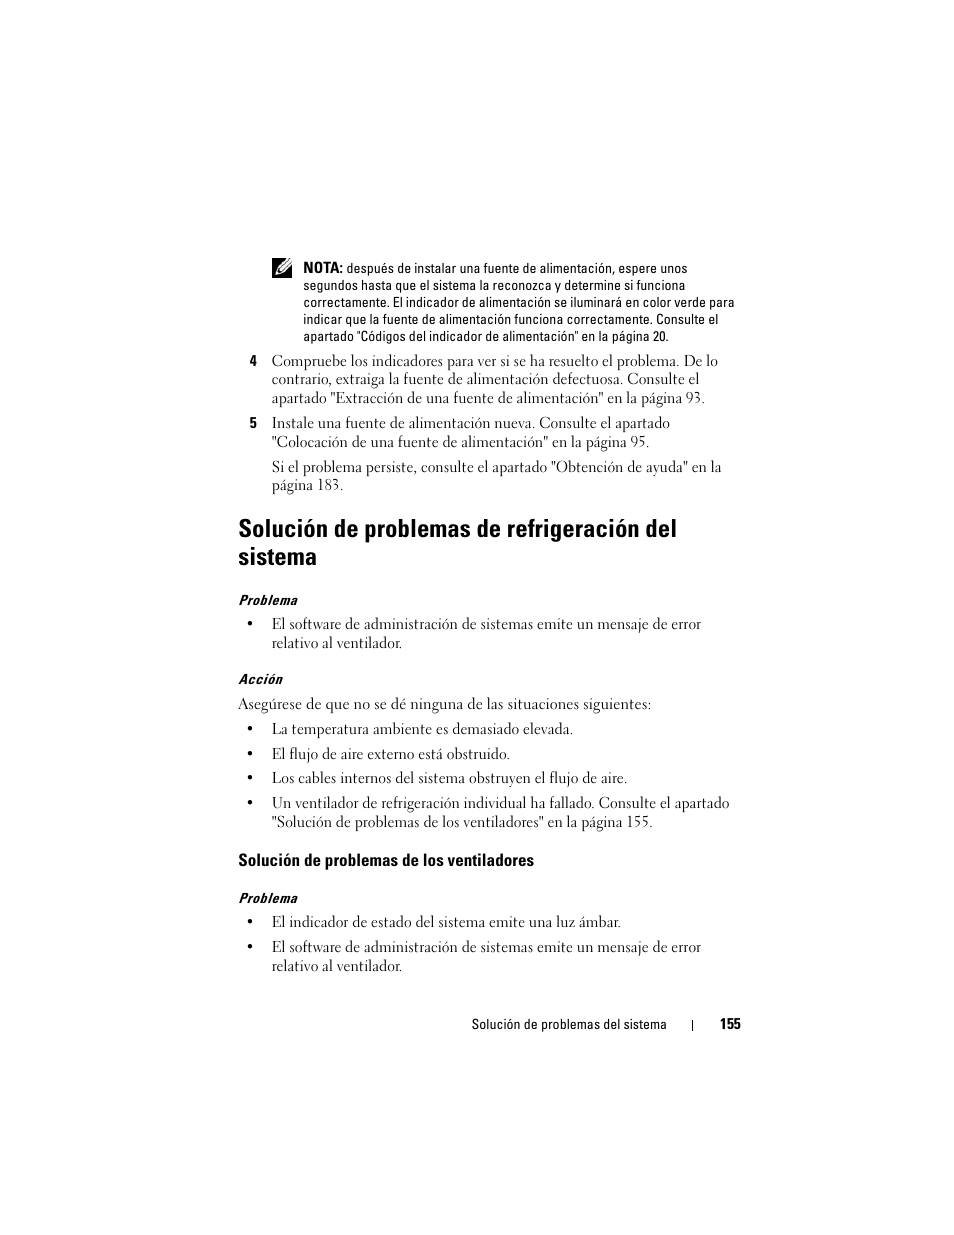 Solución de problemas de refrigeración del sistema, Solución de problemas de los ventiladores | Dell PowerVault DL2000 Manual del usuario | Página 155 / 206